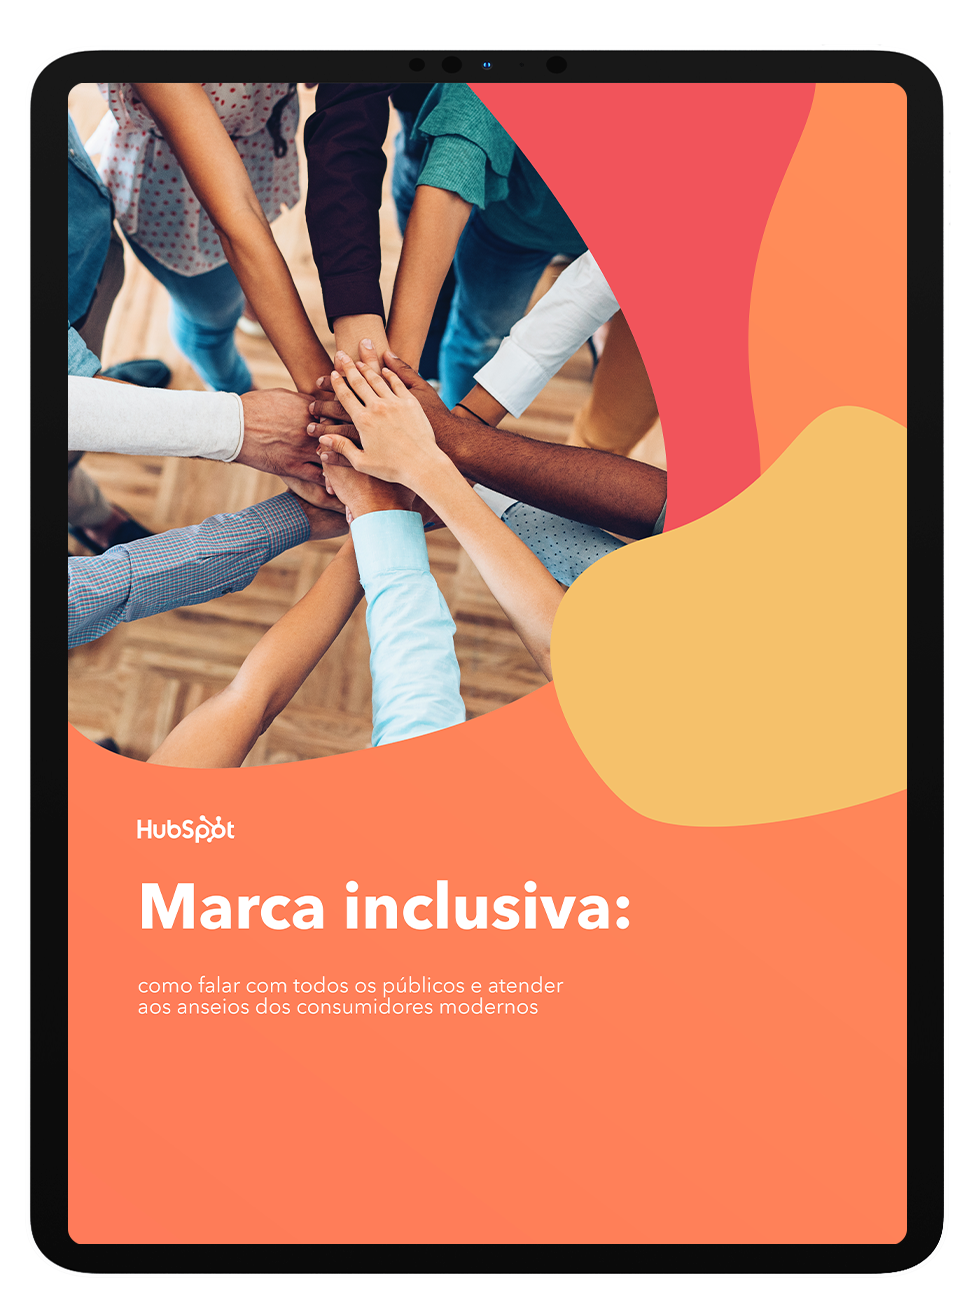 Mockup_Marca-inclusiva